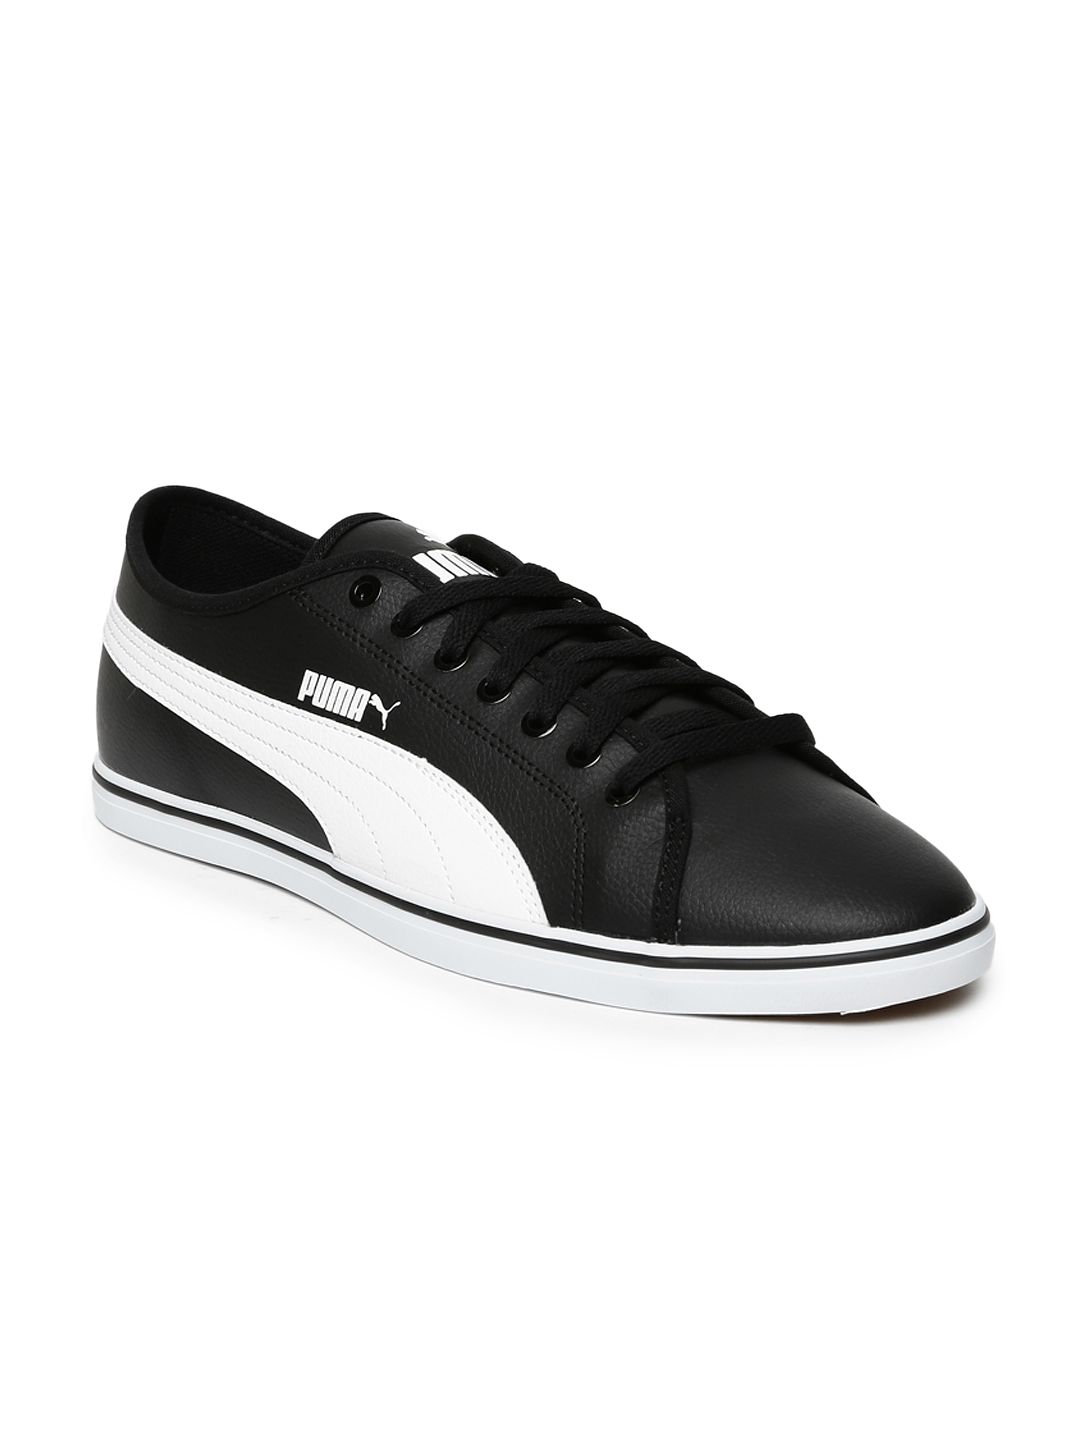 Buy PUMA Men Black Solid Regular Sneakers - Casual Shoes for Men ...